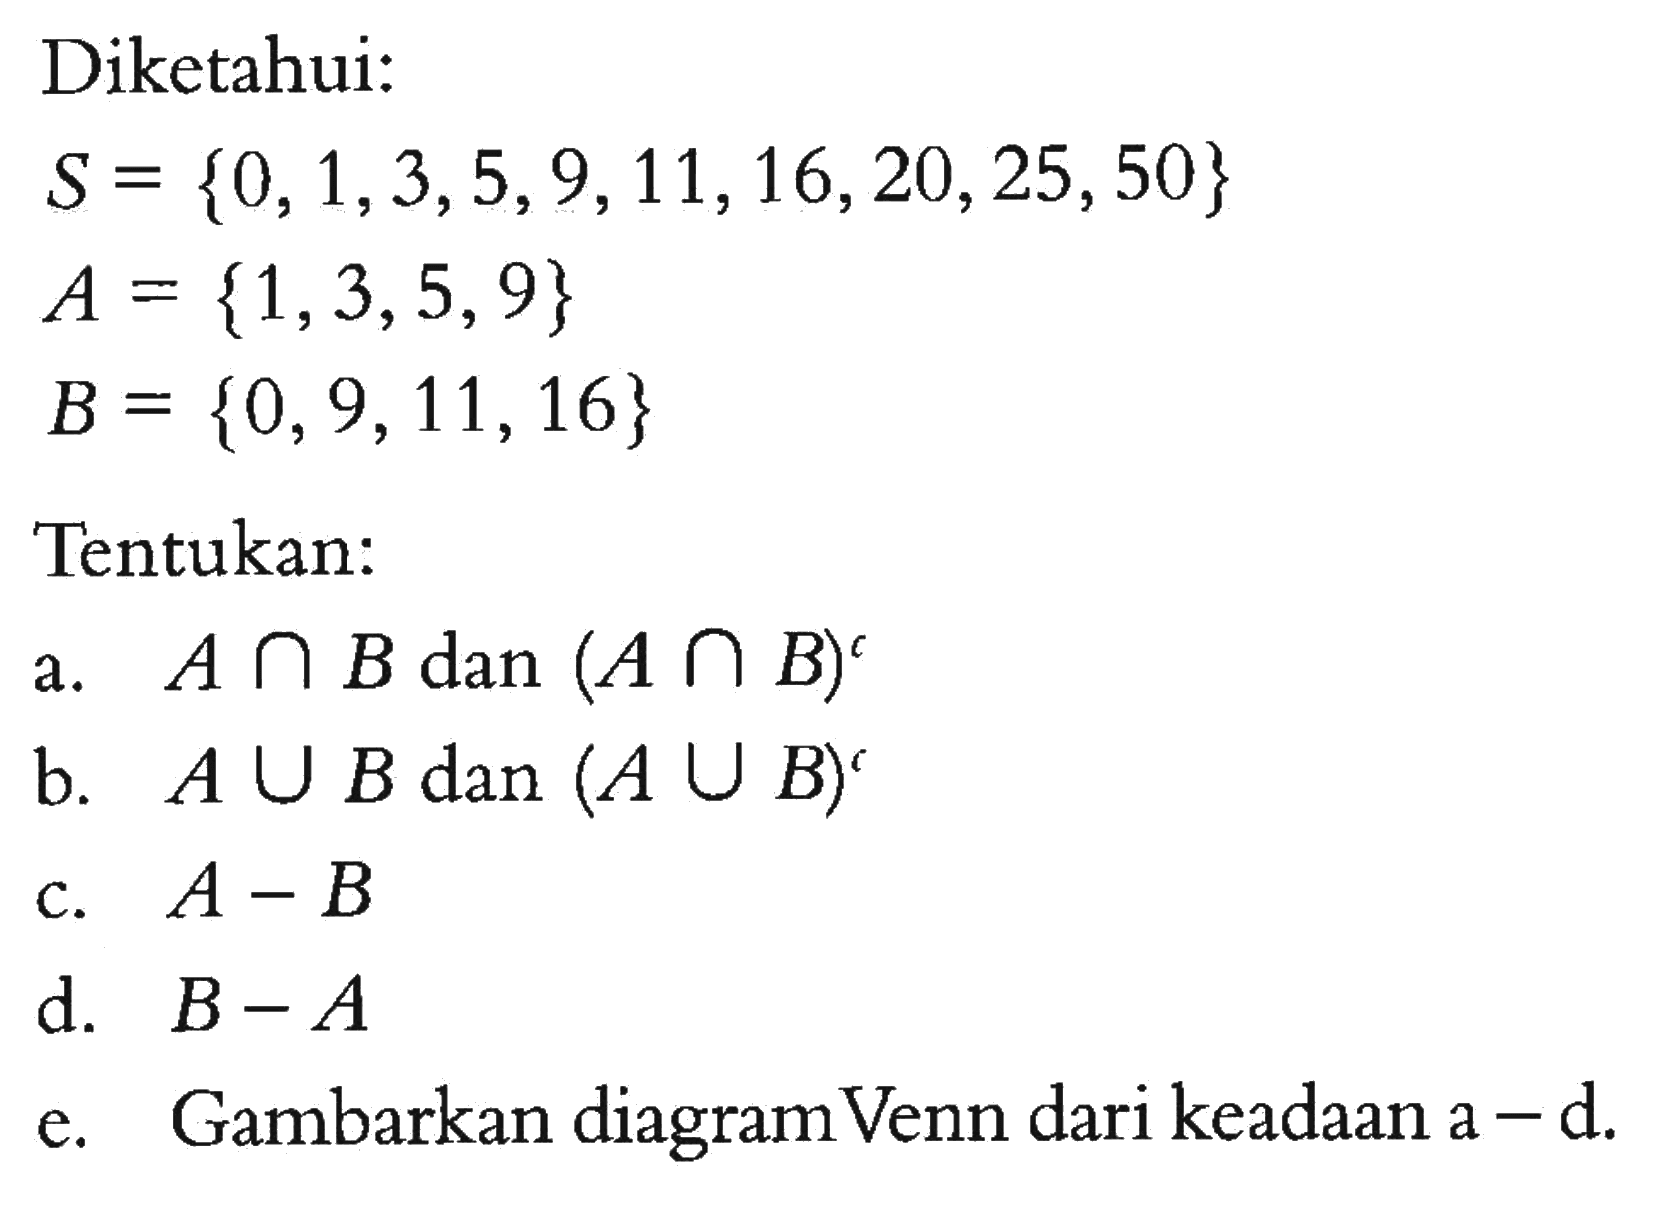 Diketahui: S = {0, 1, 3, 5, 9, 11, 16, 20, 25, 50} A = {1, 3, 5, 9} B = {0,9,11,16} Tentukan: a. A n B dan (A u B)^t b. A u B dan (A u B)^t c. A - B d. B - A e. Gambarkan diagram Venn dari keadaan a - d.